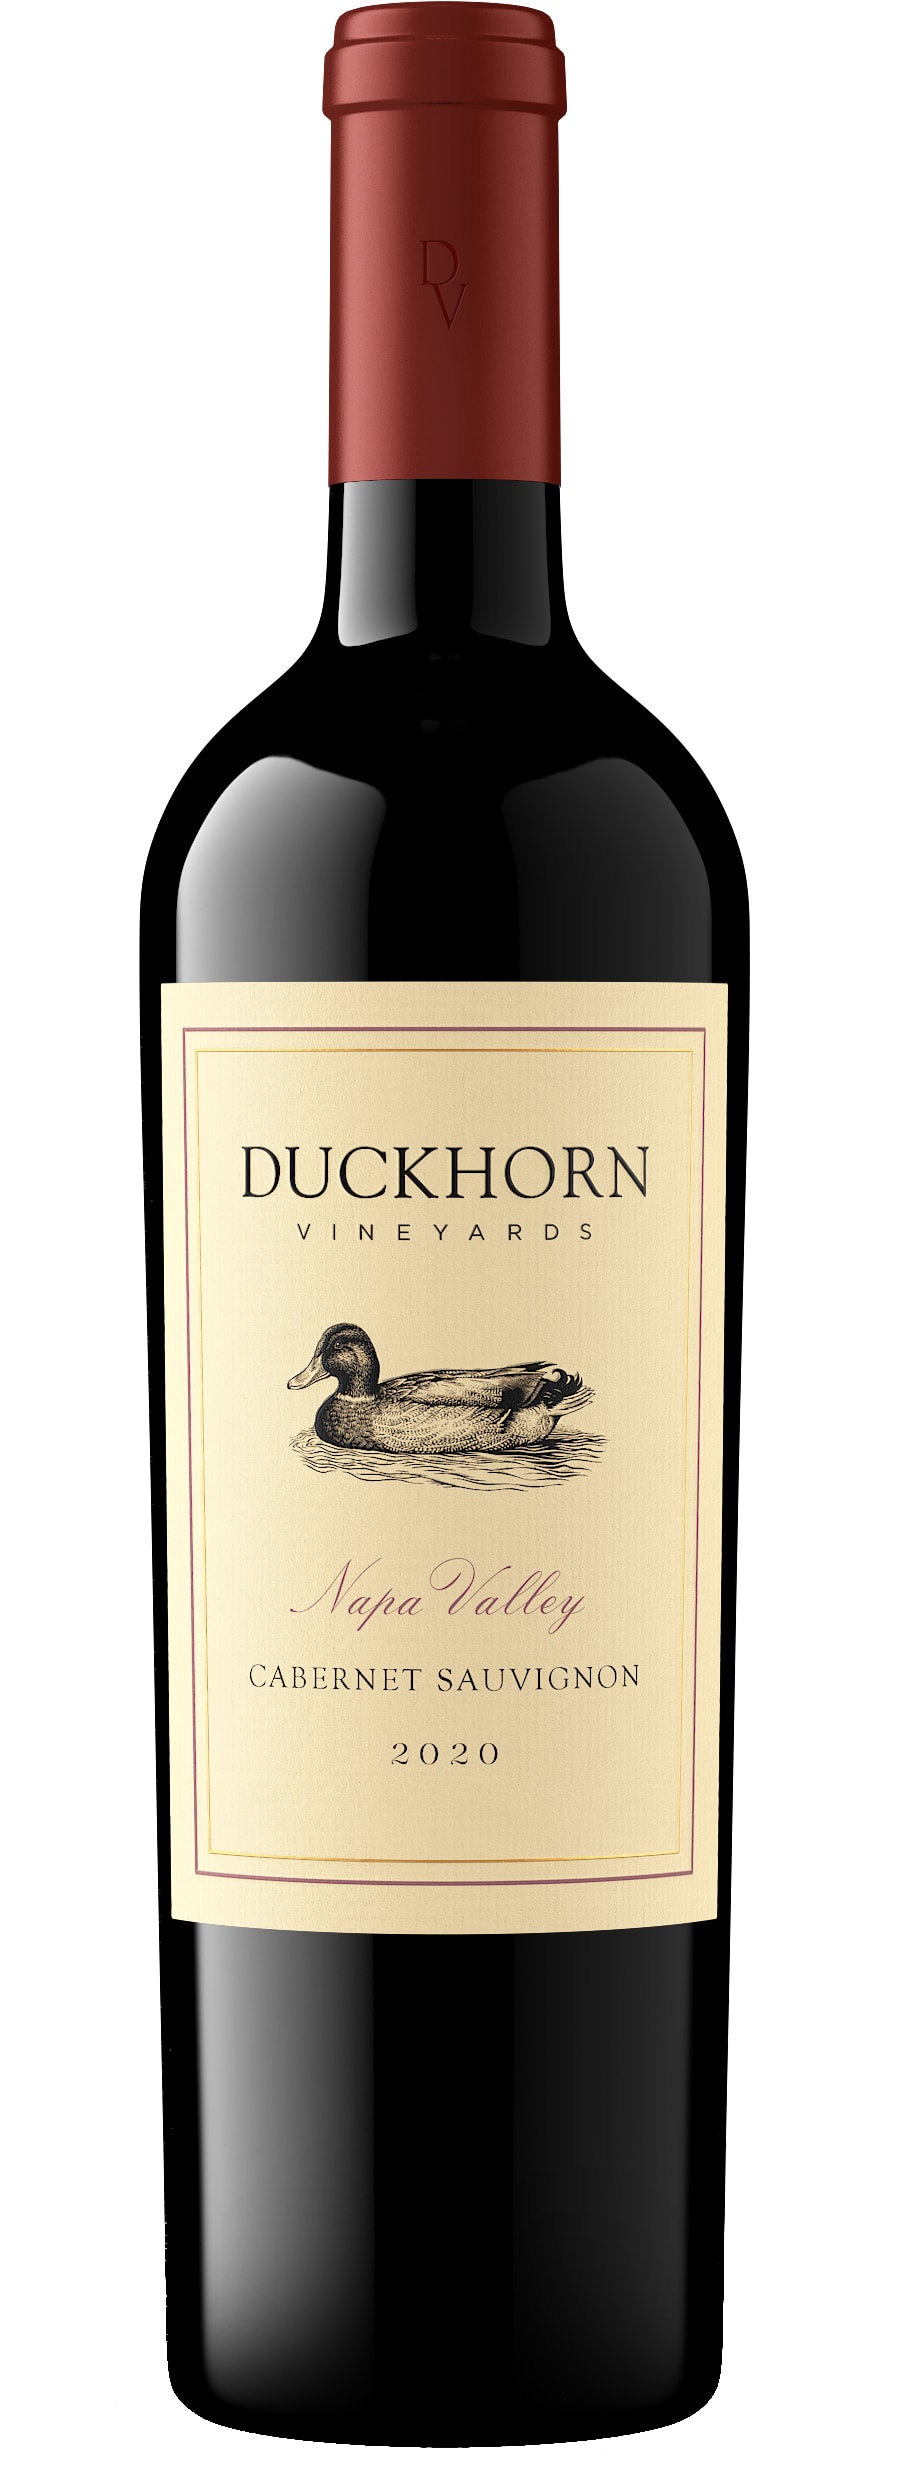 Duckhorn Vineyards - Cabernet Sauvignon Napa Valley 2020 (375)